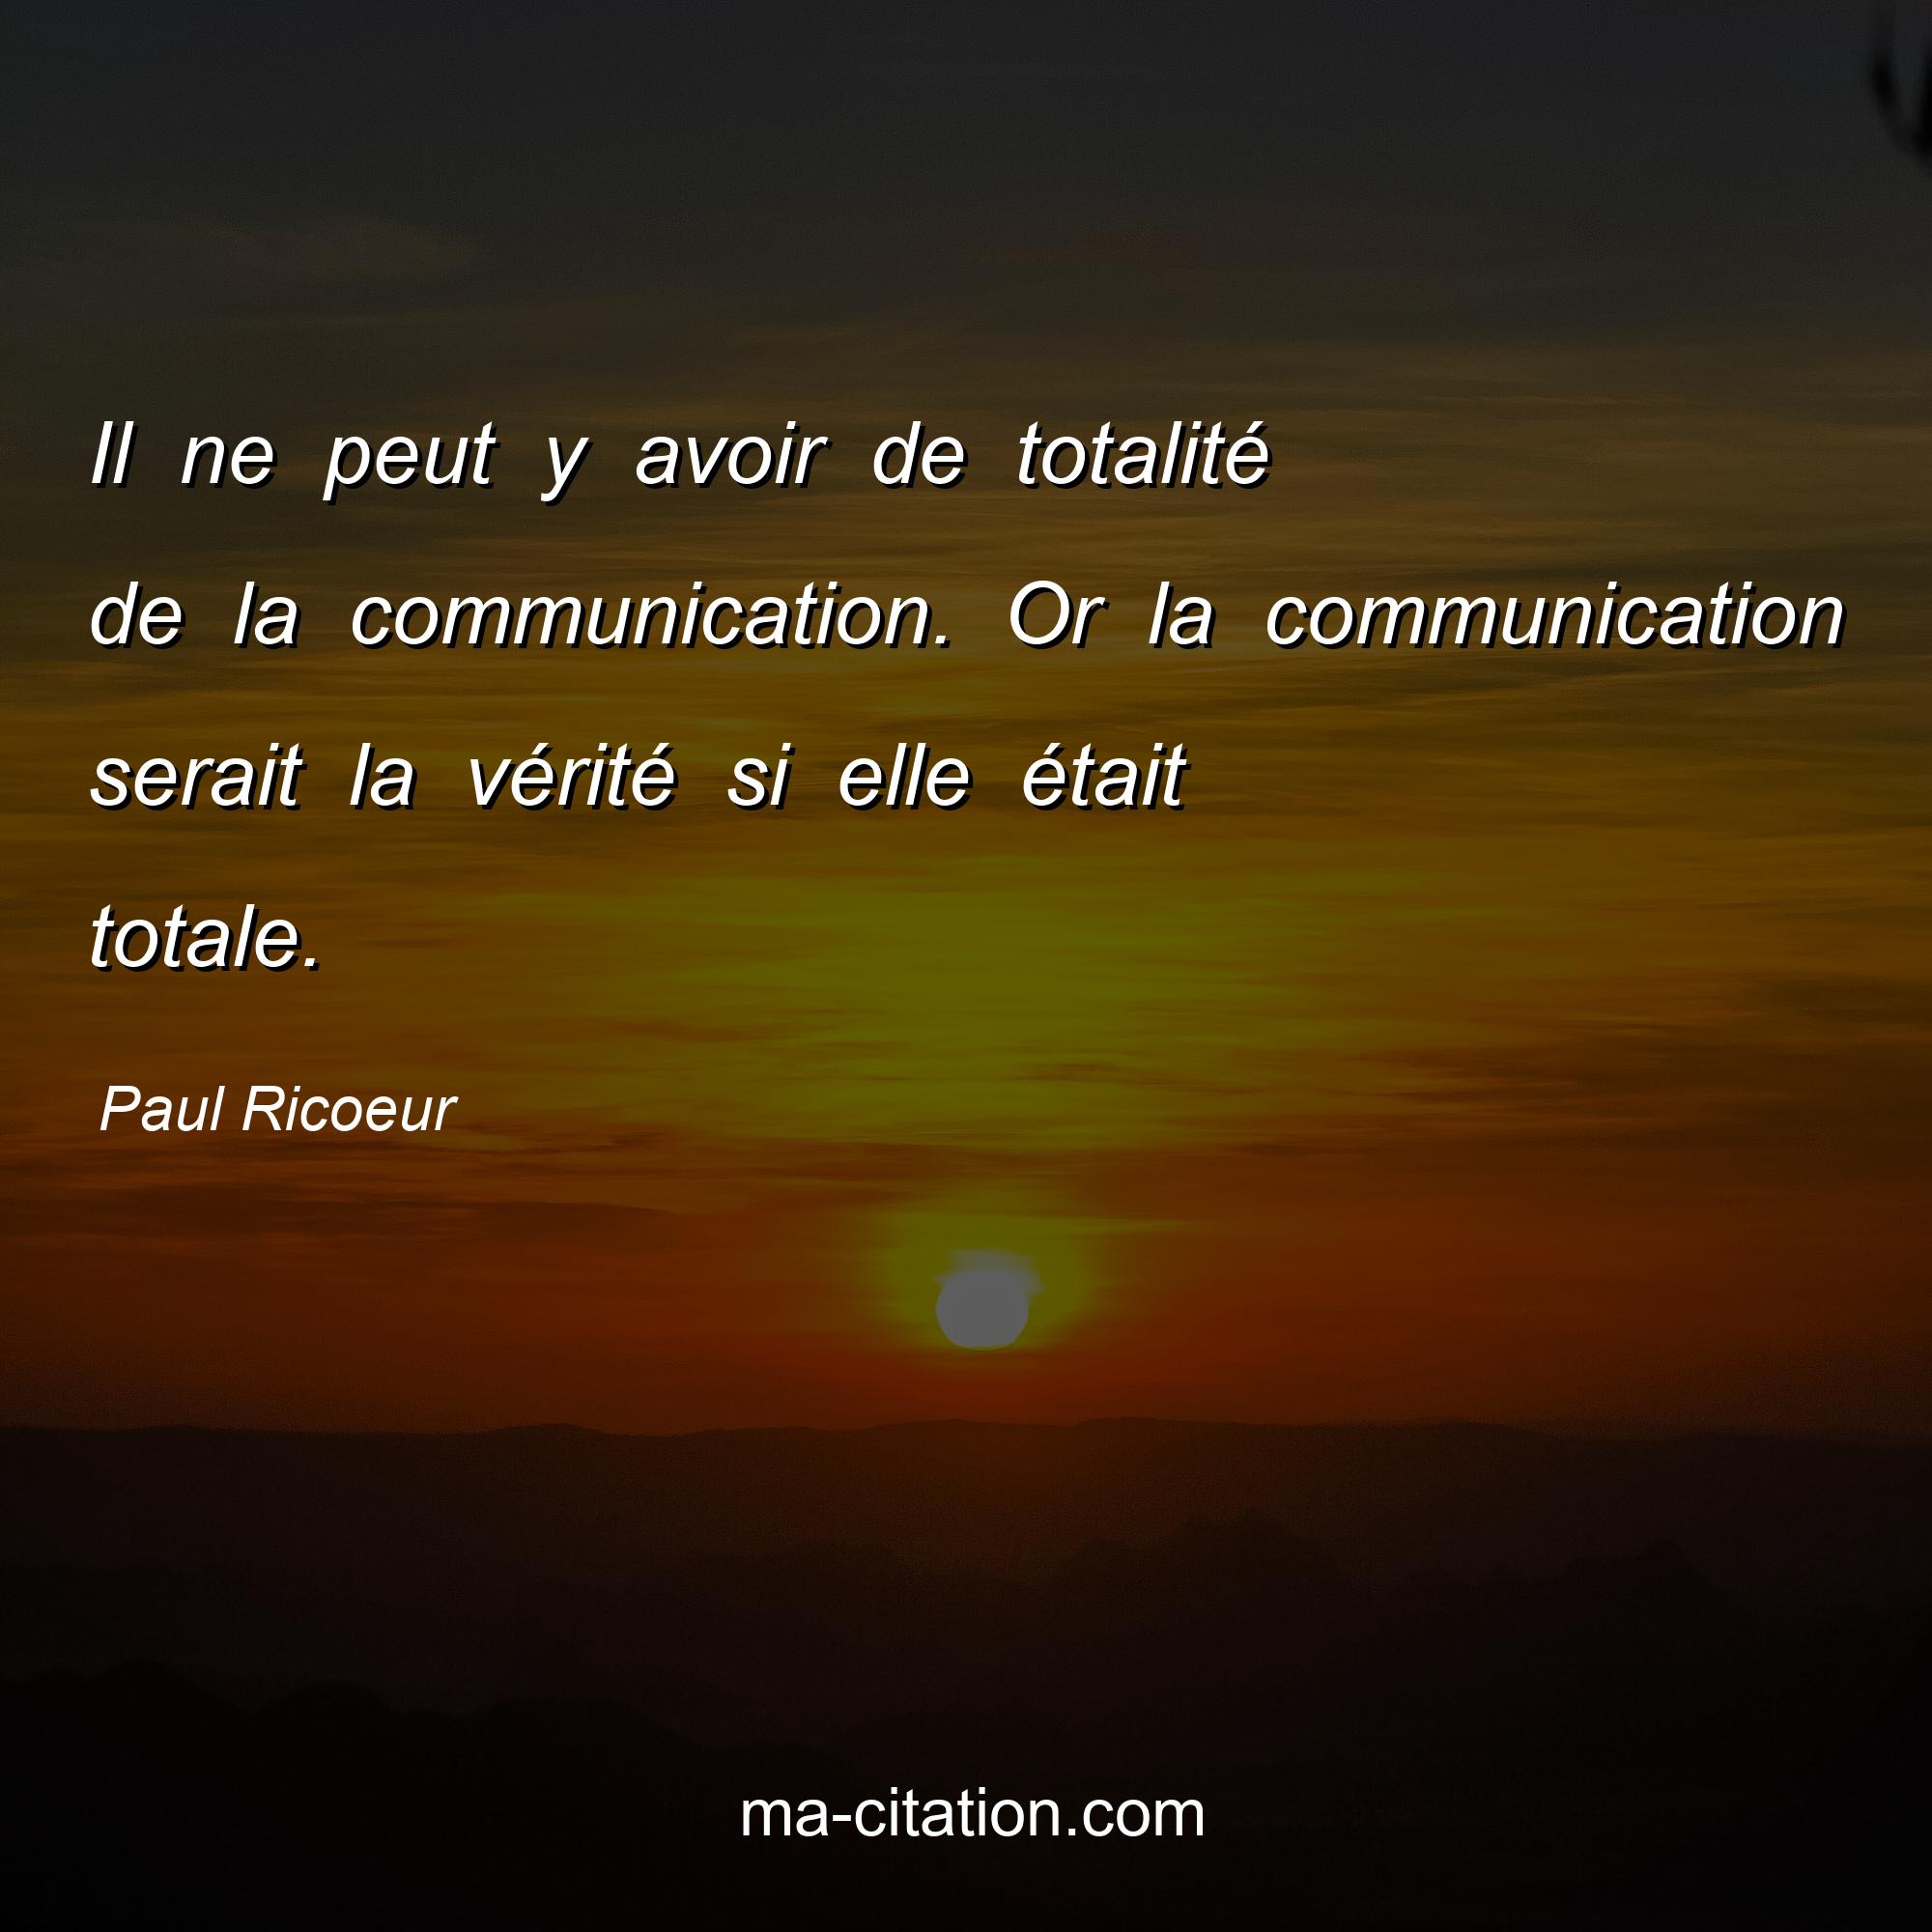 Paul Ricoeur : Il ne peut y avoir de totalité de la communication. Or la communication serait la vérité si elle était totale.